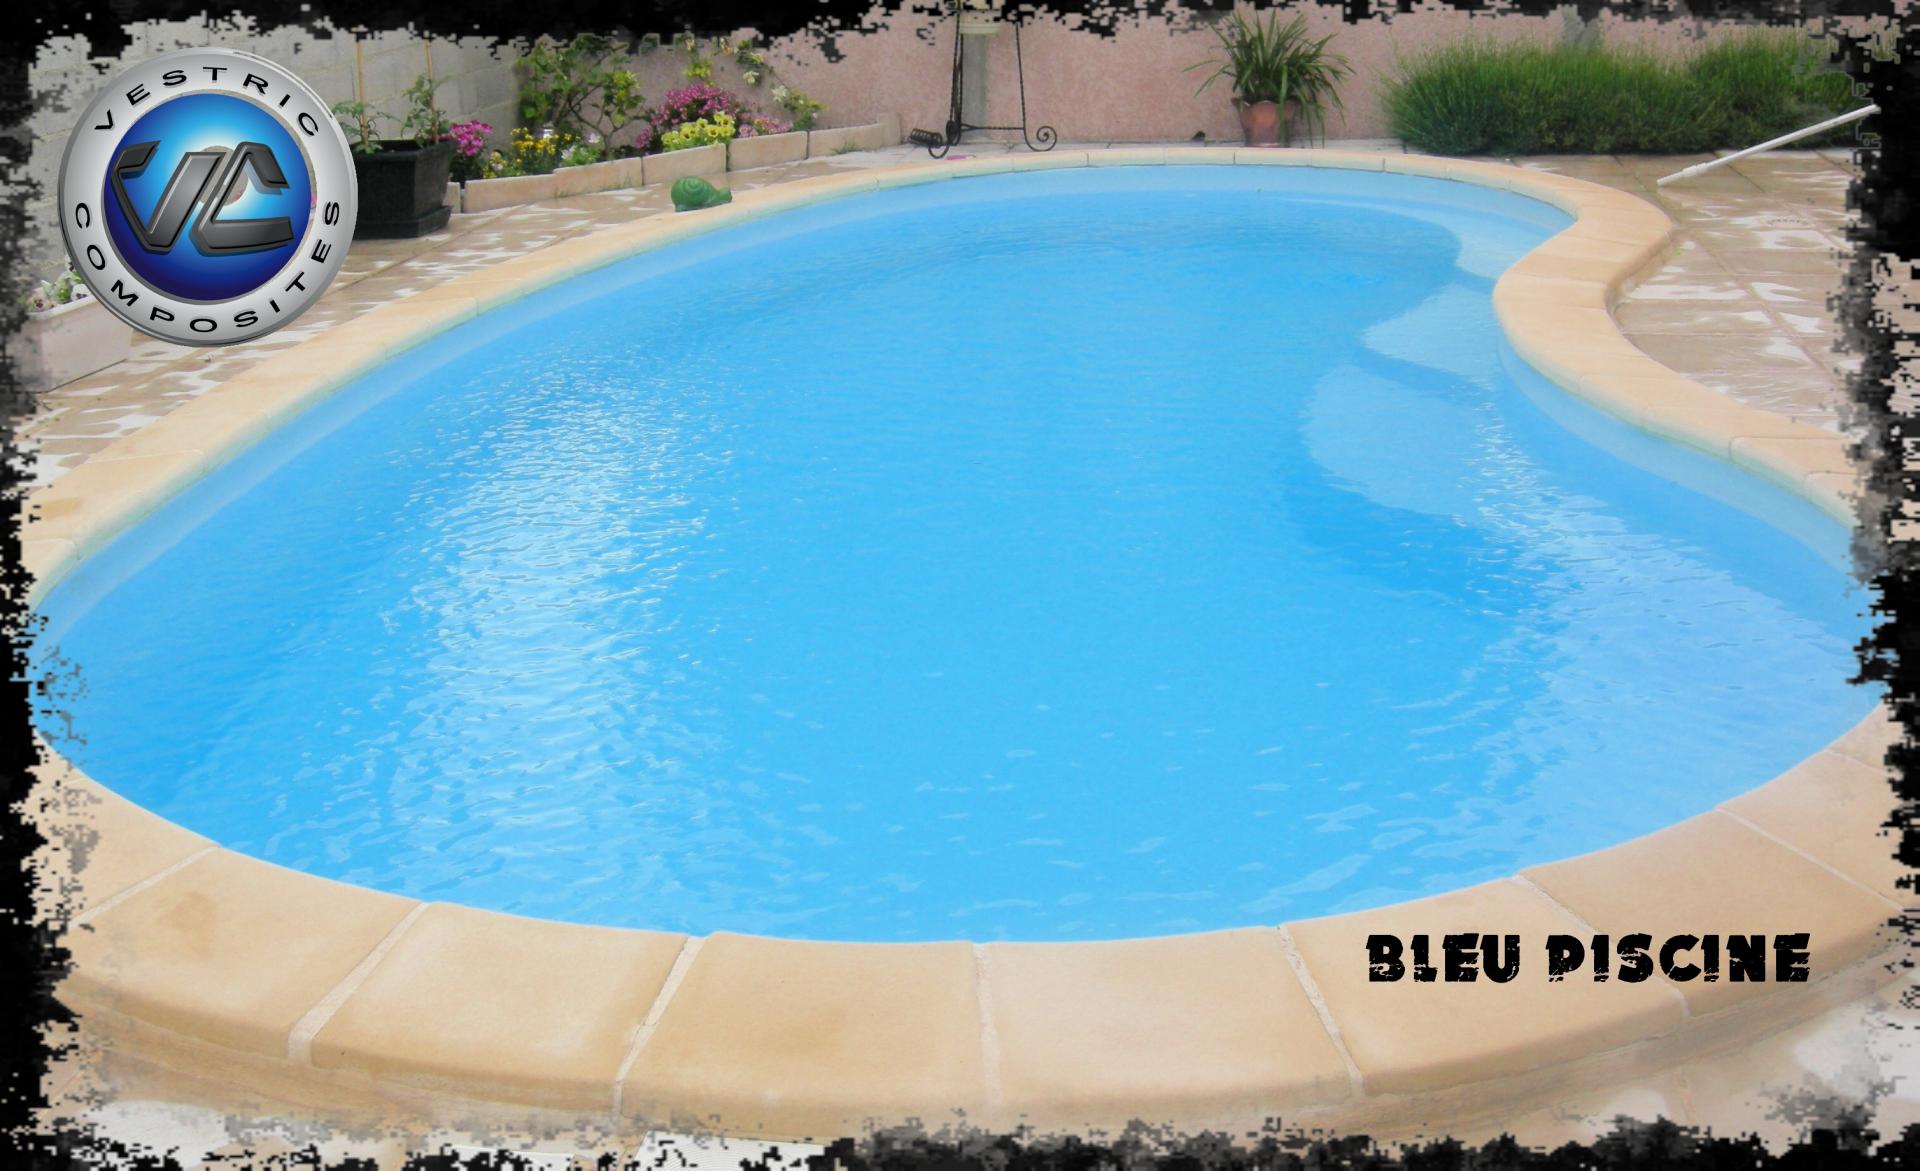 Ral 2000 couleur bleu clair piscine en eau vestric composites 1